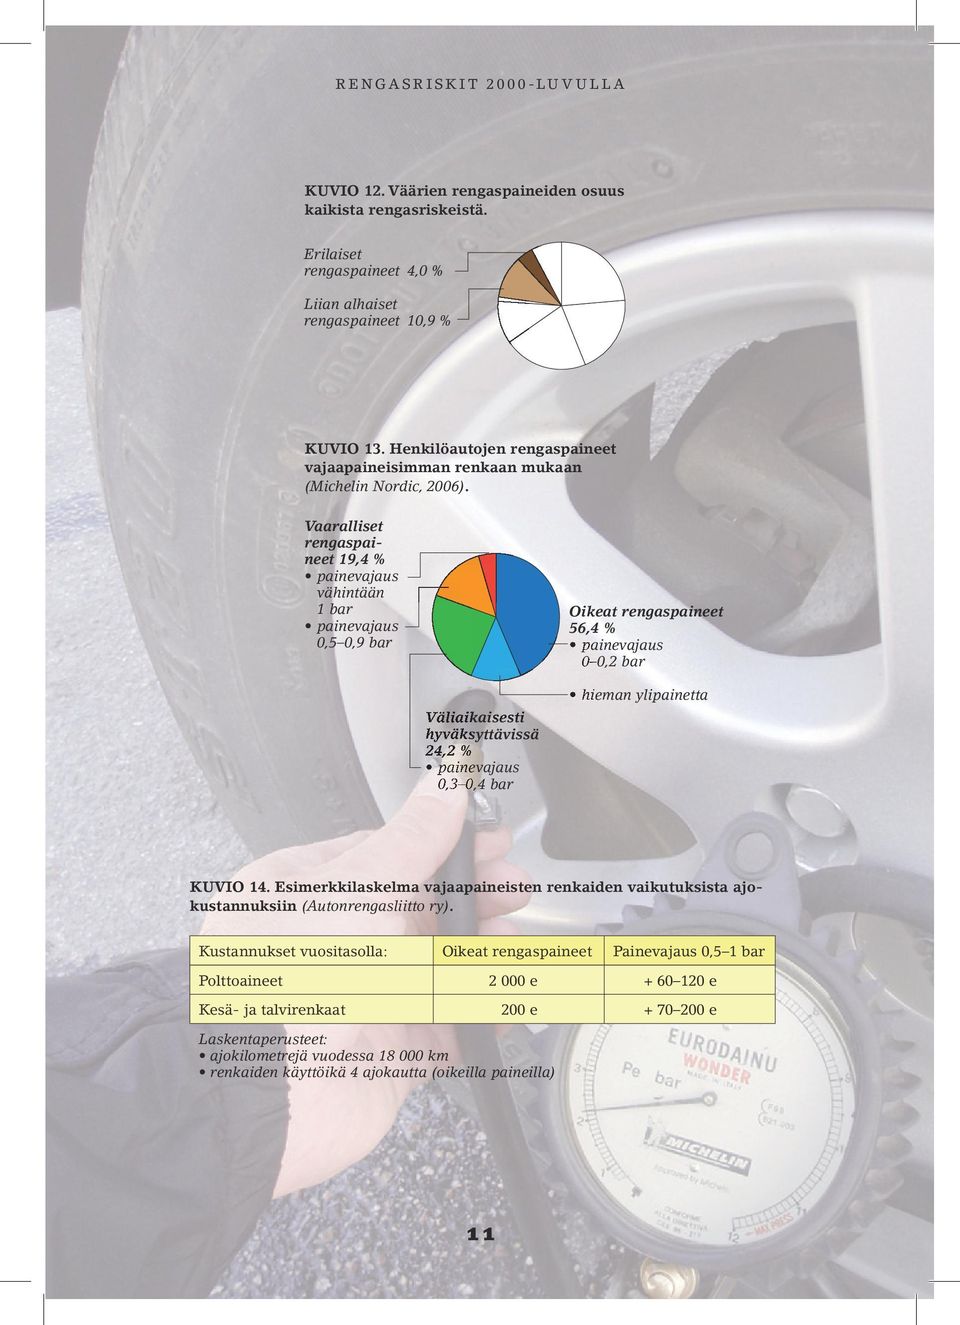 Vaaralliset rengaspaineet 19,4 % painevajaus vähintään 1 bar Oikeat rengaspaineet painevajaus 56,4 % 0,5 0,9 bar painevajaus 0 0,2 bar Väliaikaisesti hyväksyttävissä 24,2 % painevajaus 0,3 0,4 bar